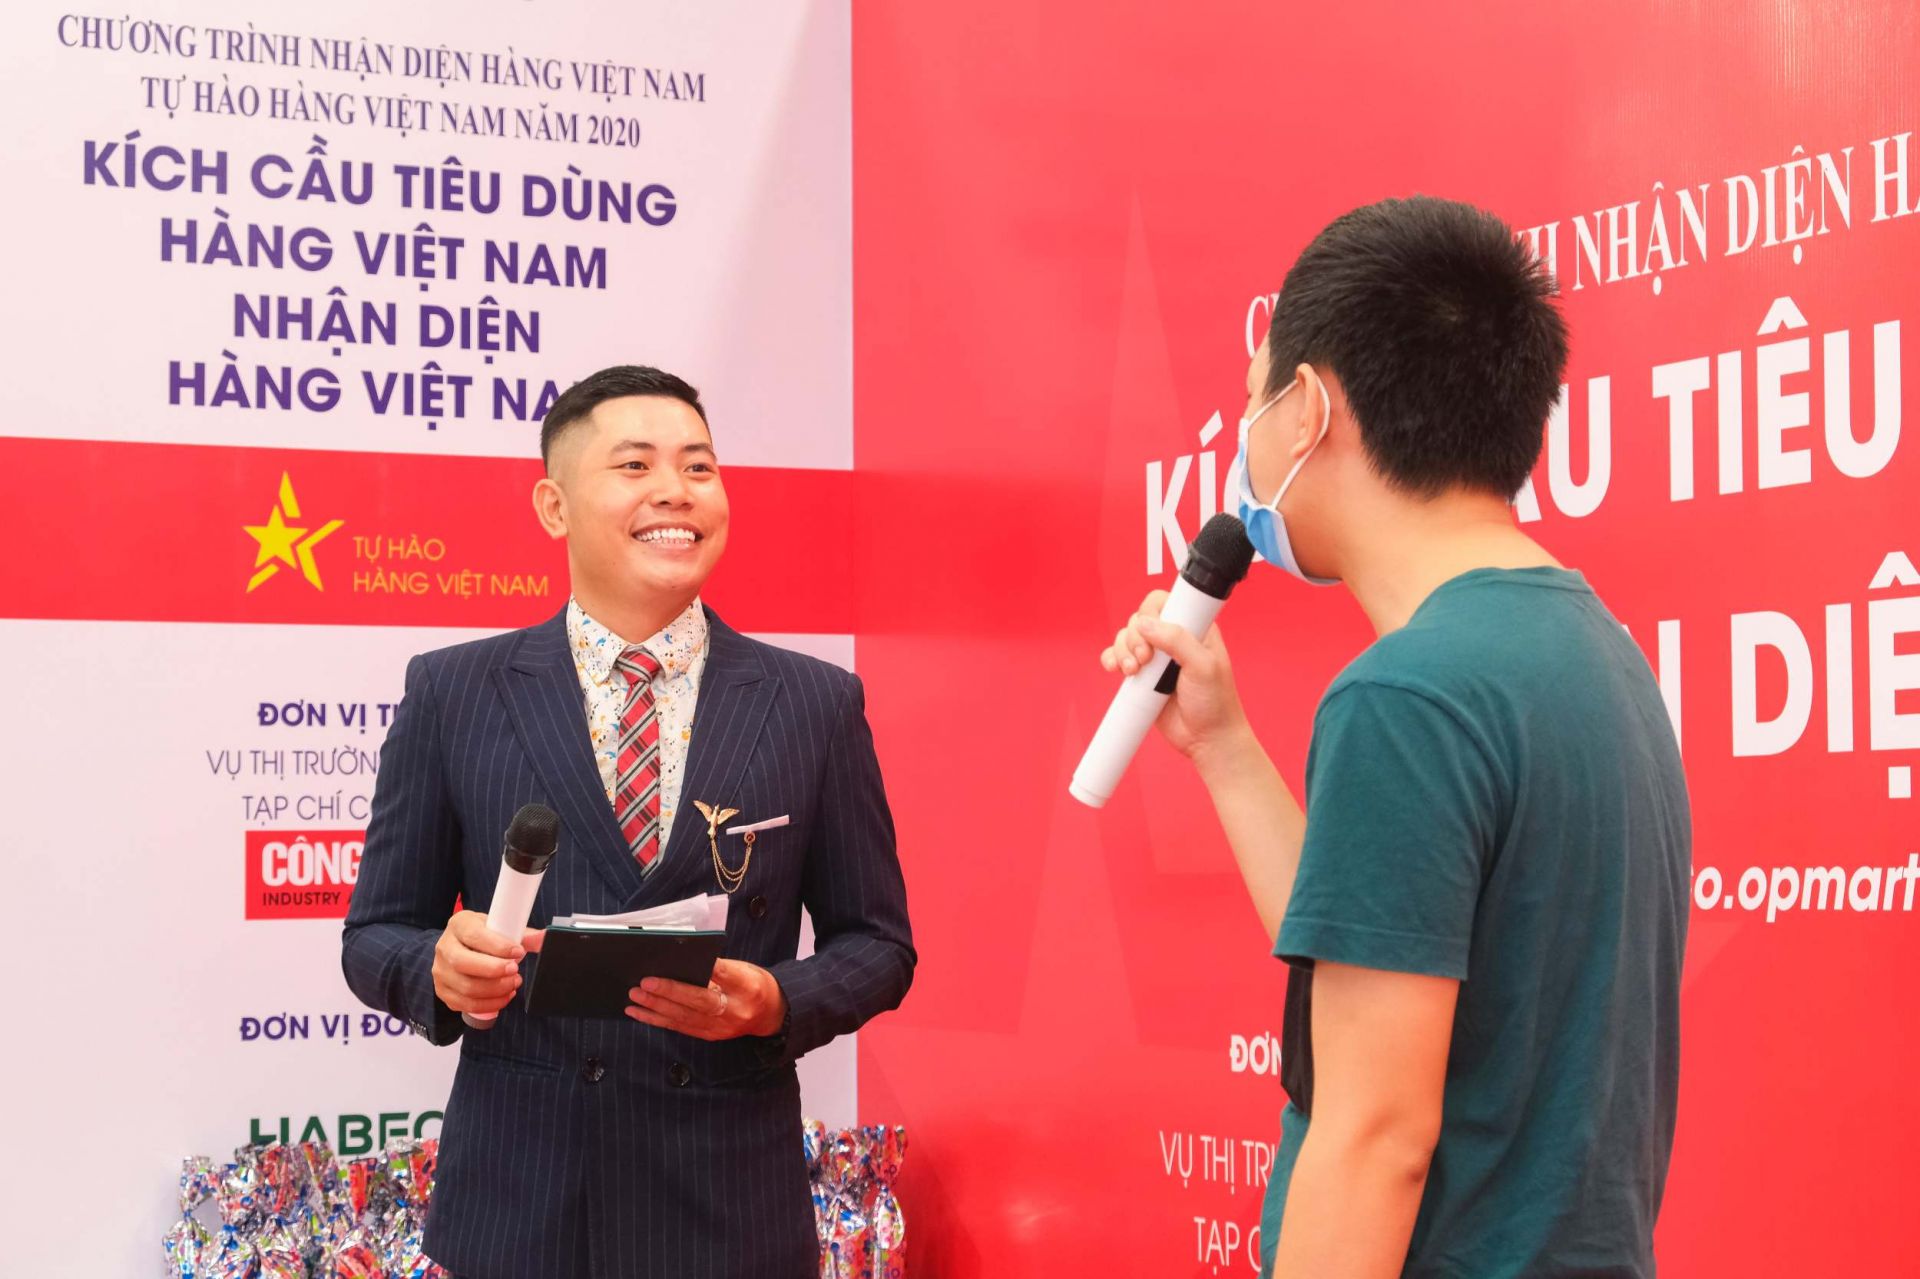 Hoạt động minigame, giao lưu trực tiếp với người tiêu dùng nhằm nâng cao nhận thức xã hội đối với sản phẩm hàng Việt